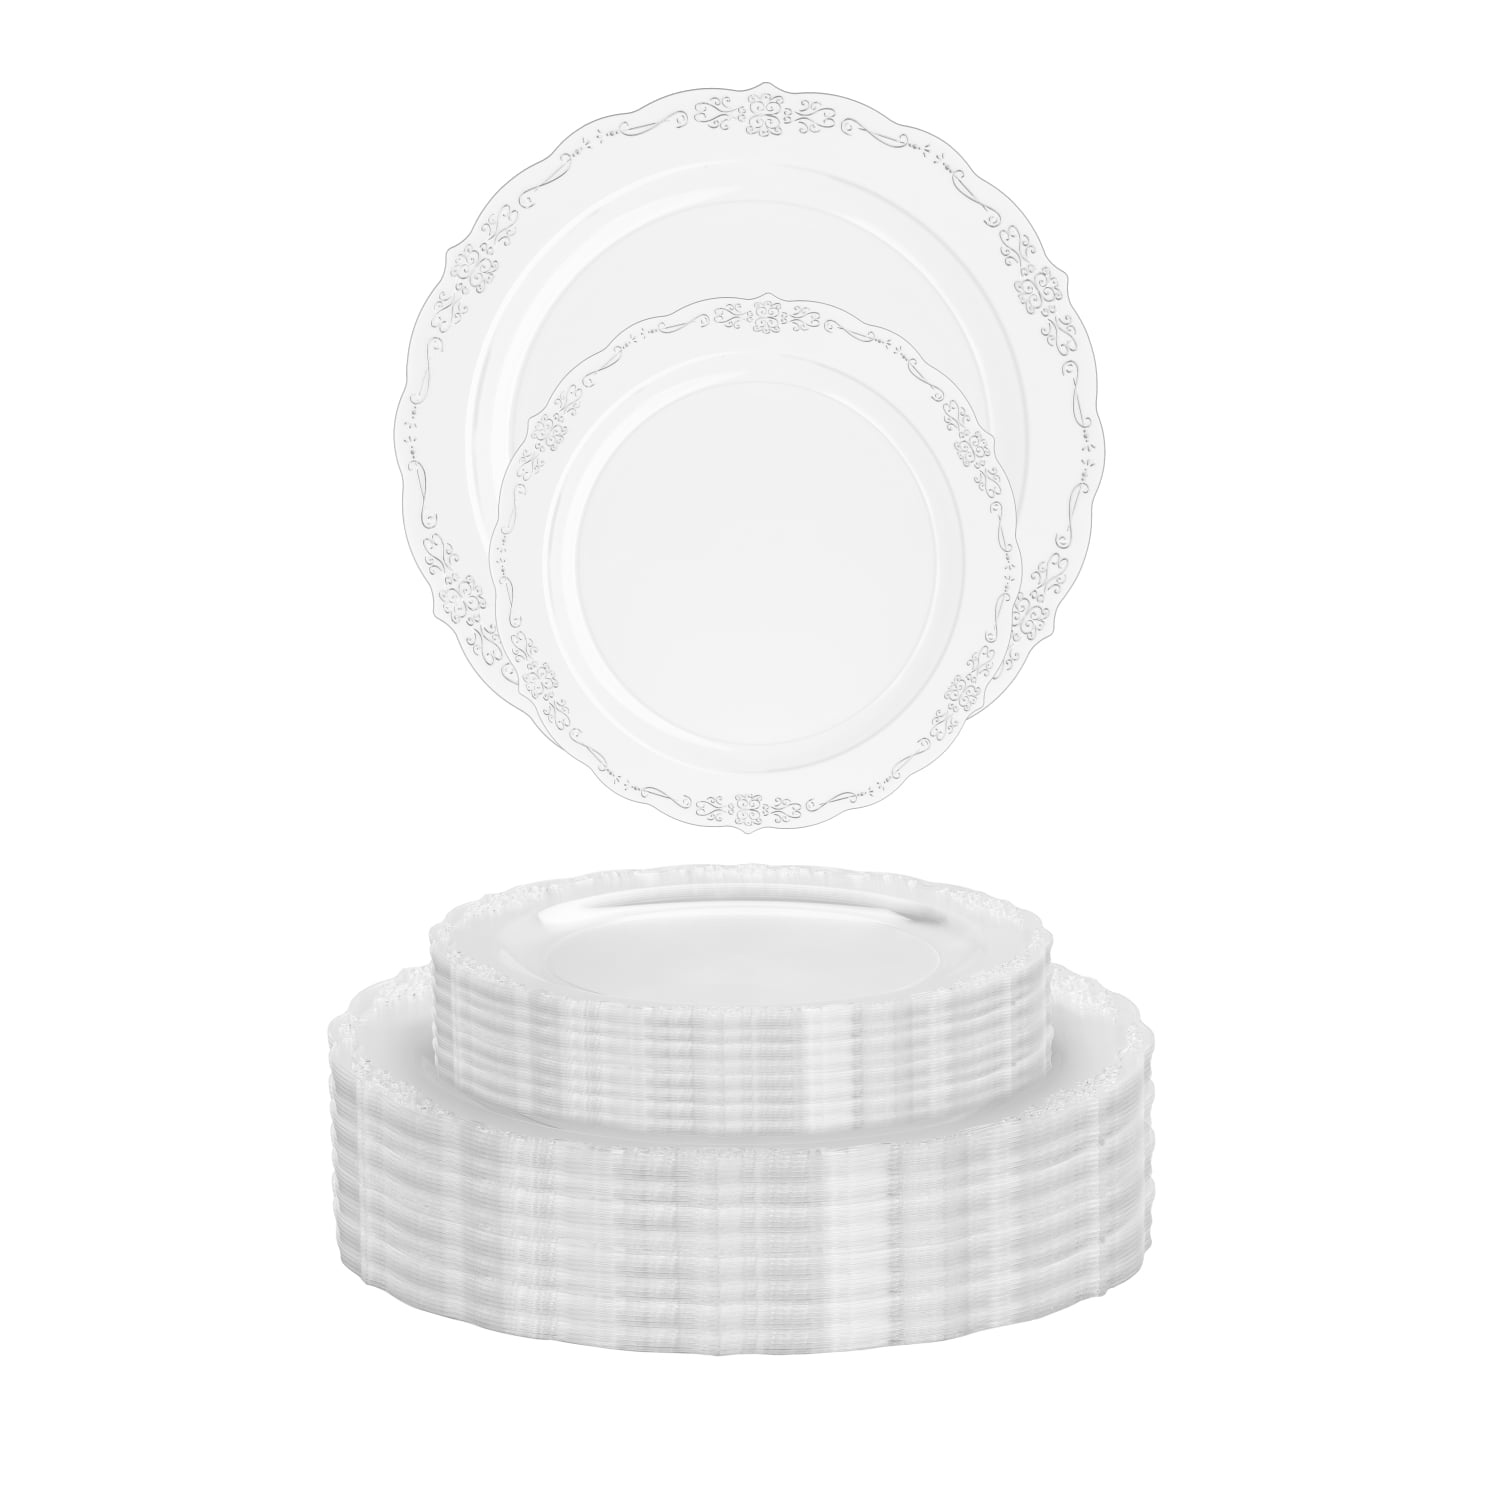 Premium Clear Plastic Dessert Plates with Gold Trim - 25 Ct